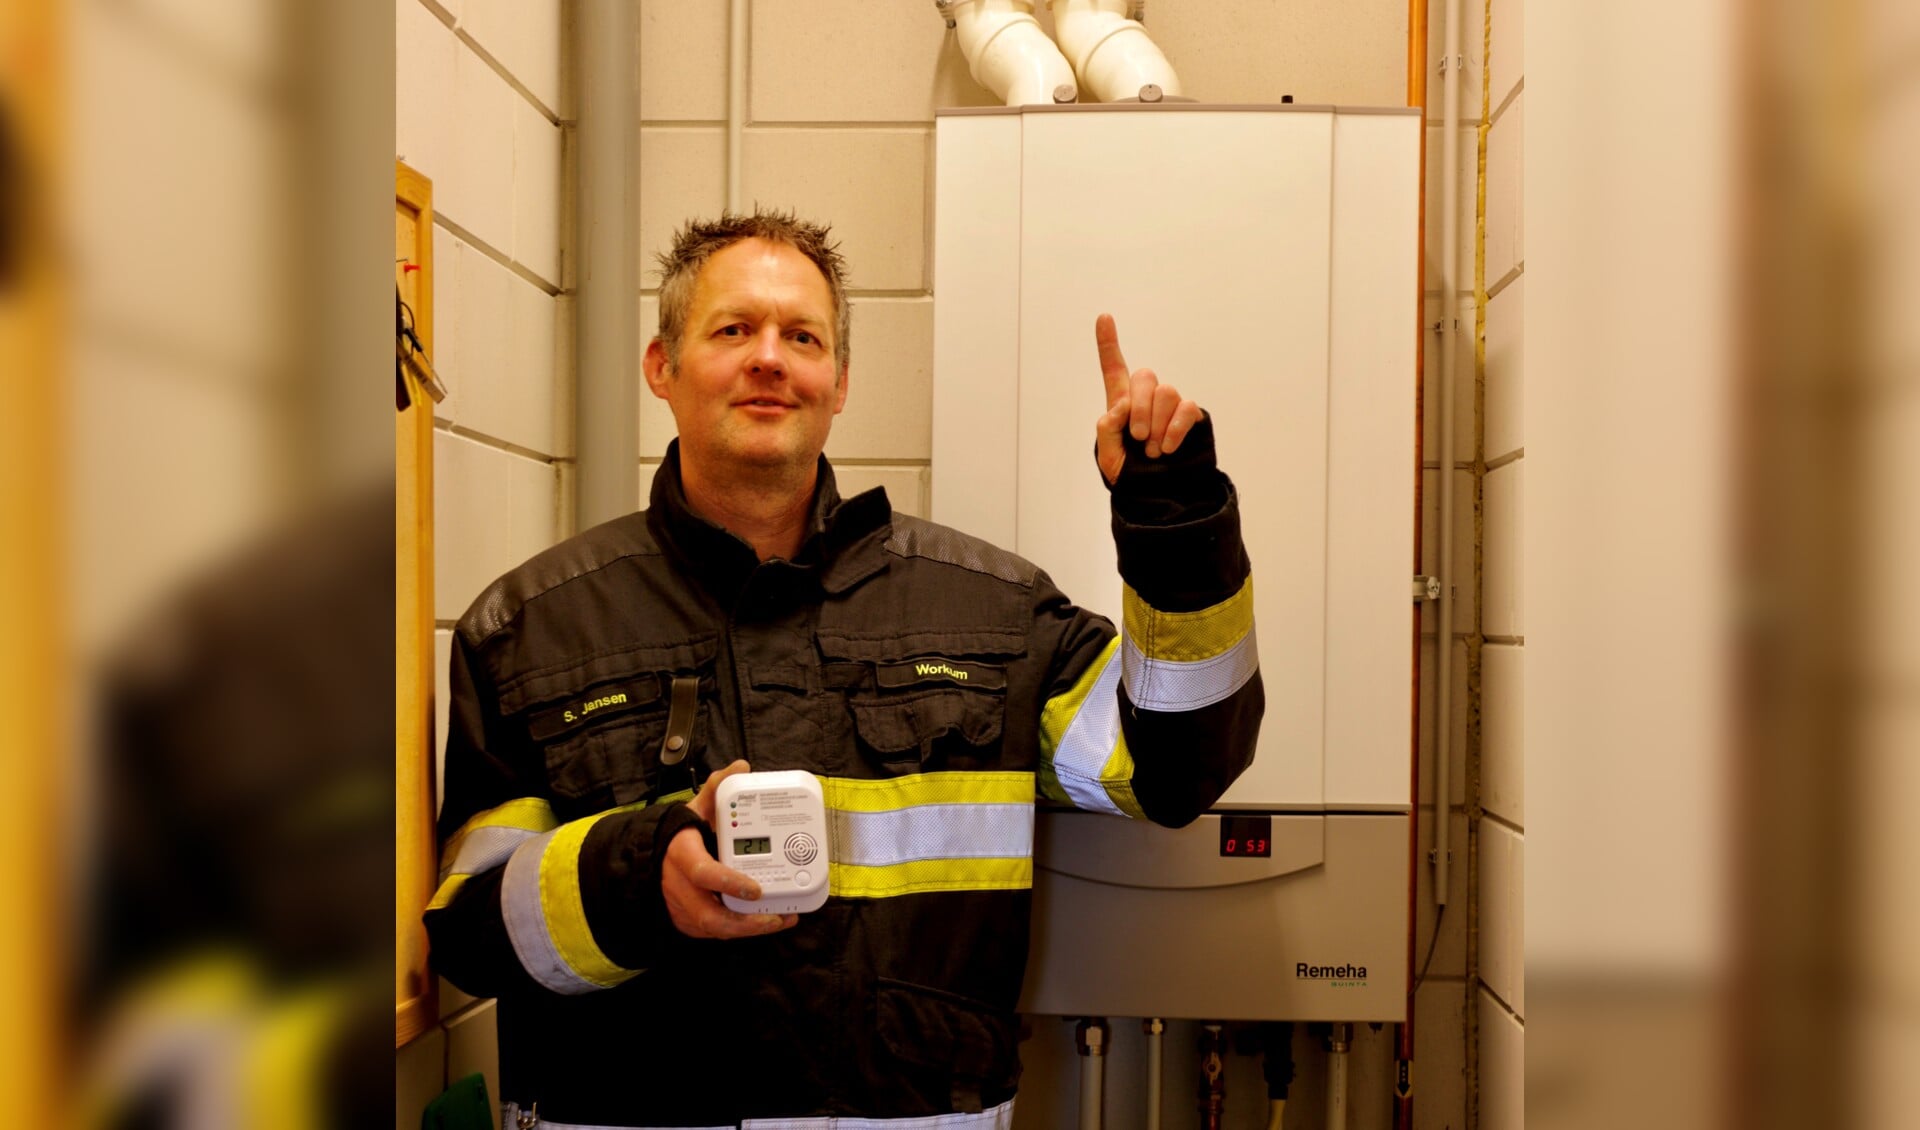 Brandweerman van post Workum wijst juiste plaats voor de co-melder aan. (Foto: Wiep Visser )